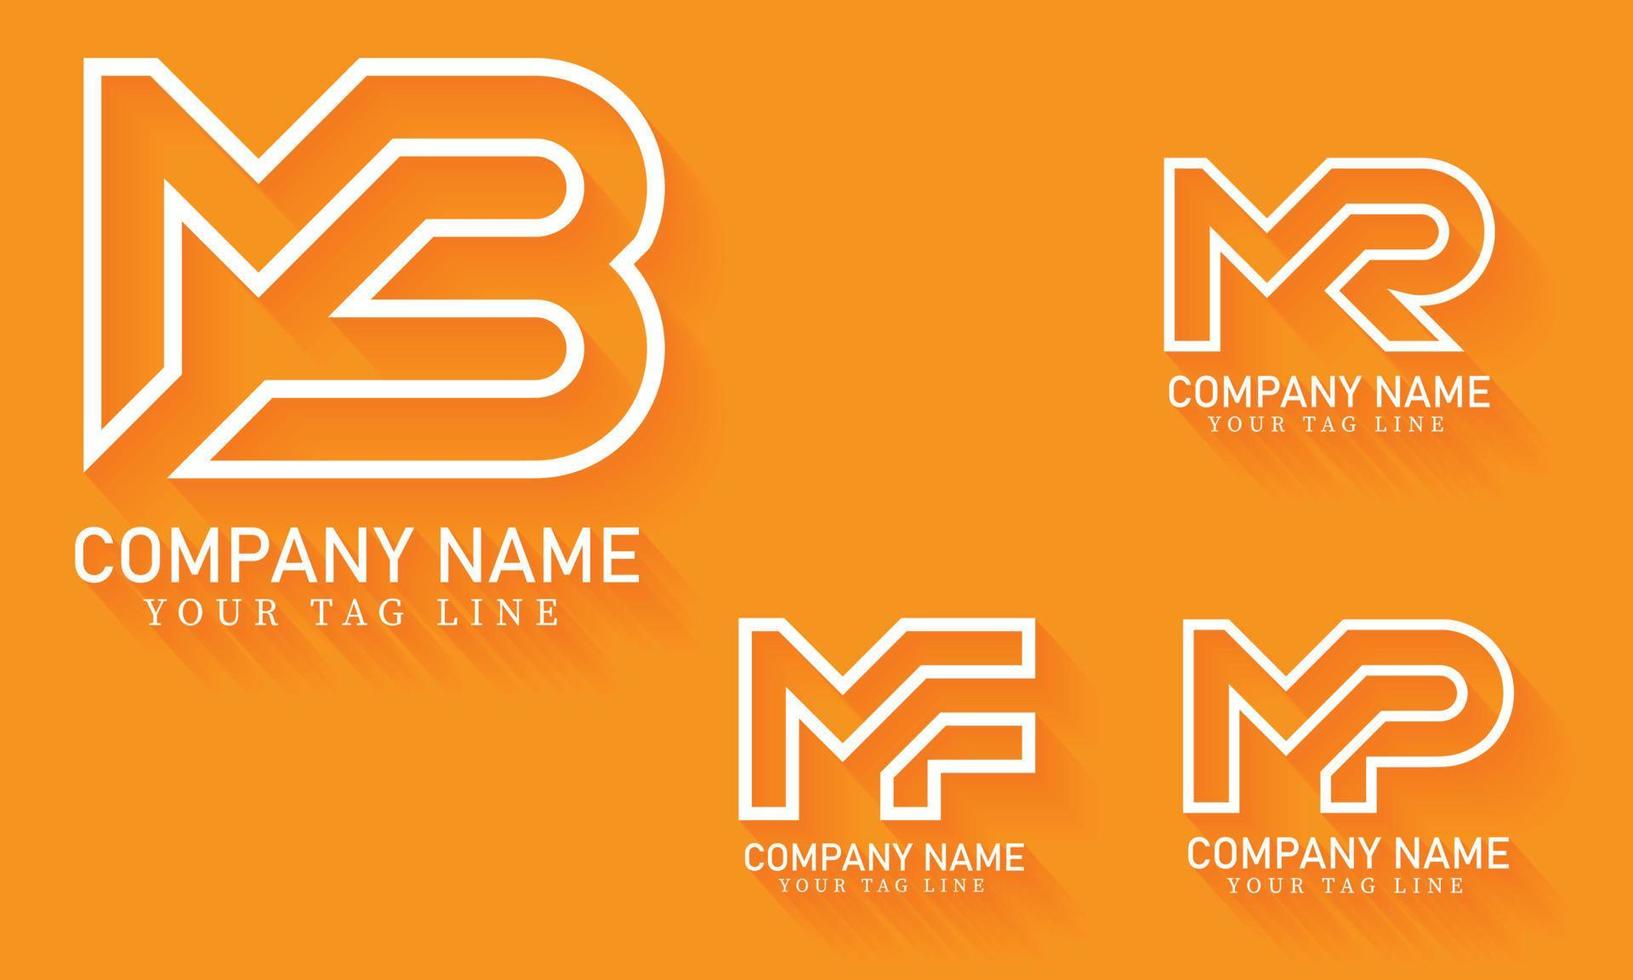 mb, mr, mf, mp, outline letter logo design vector